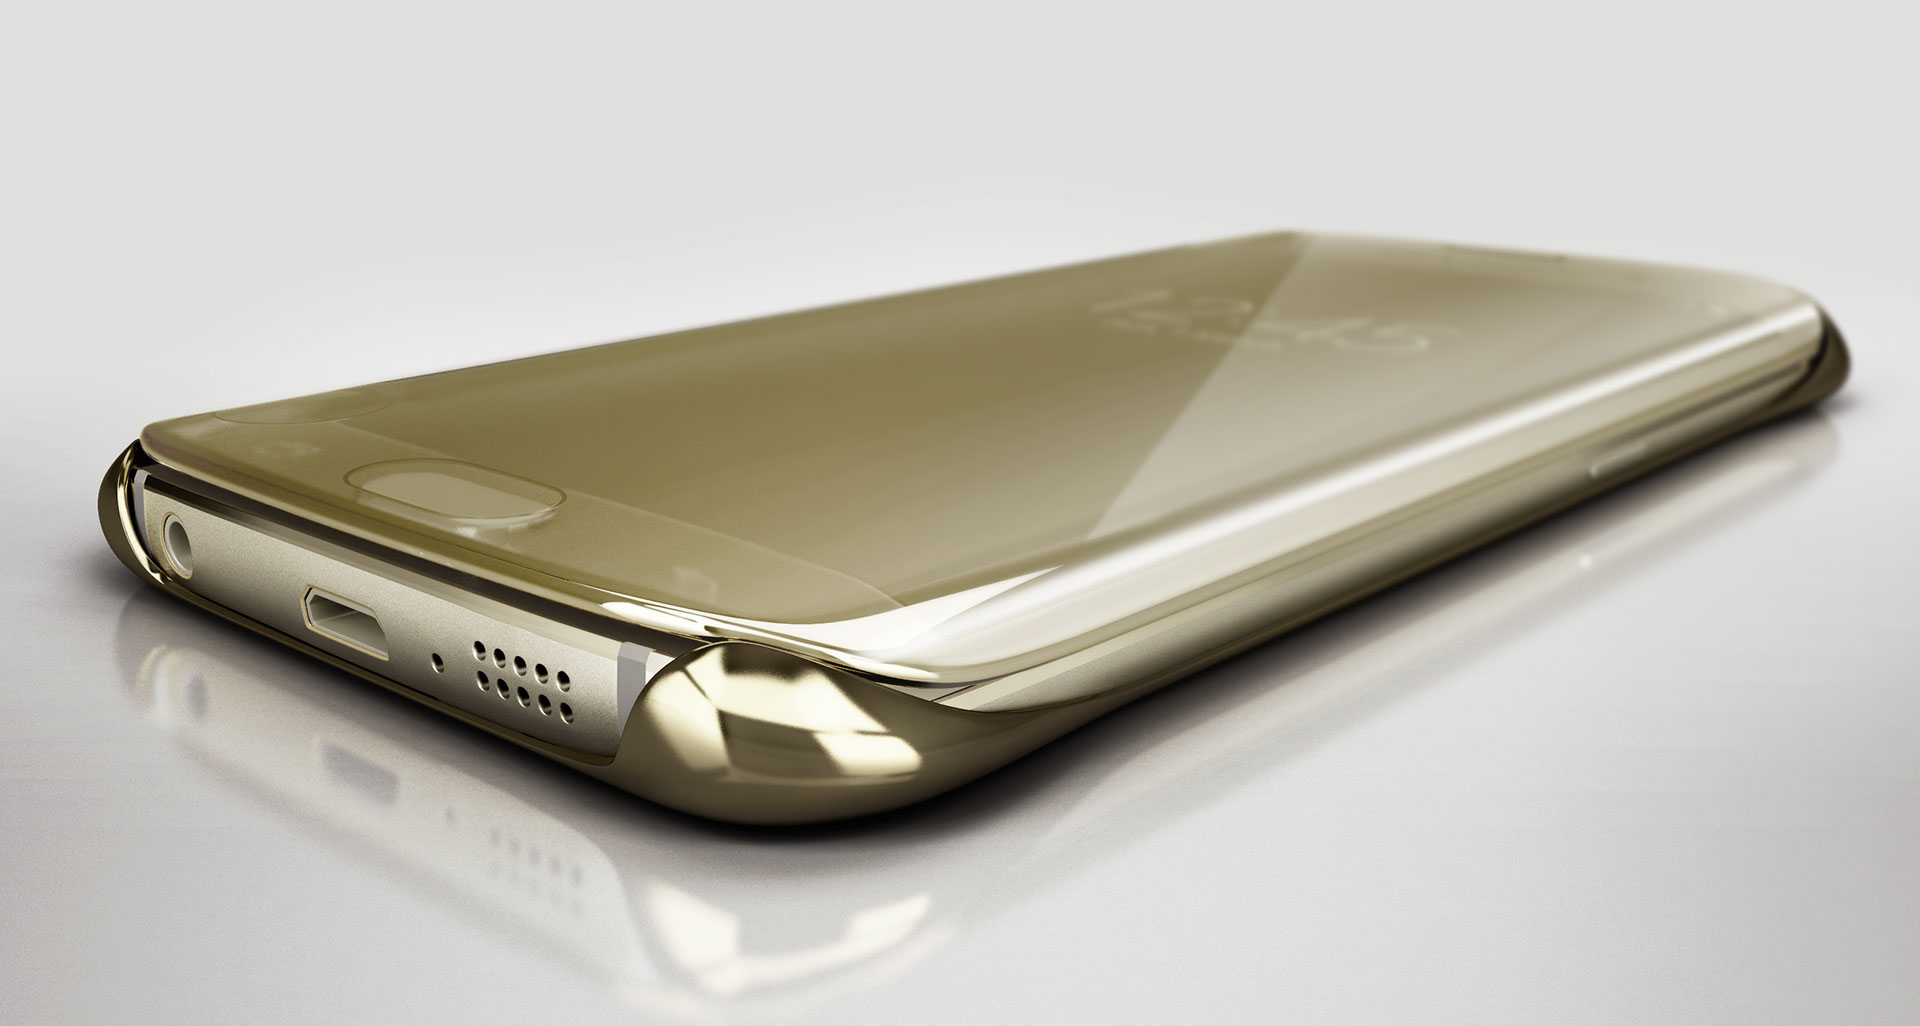 سامسونگ در تیزر جدیدش شبحی از Galaxy S6 Edge پلاس و یک غریبه را نشان داد - تکفارس 